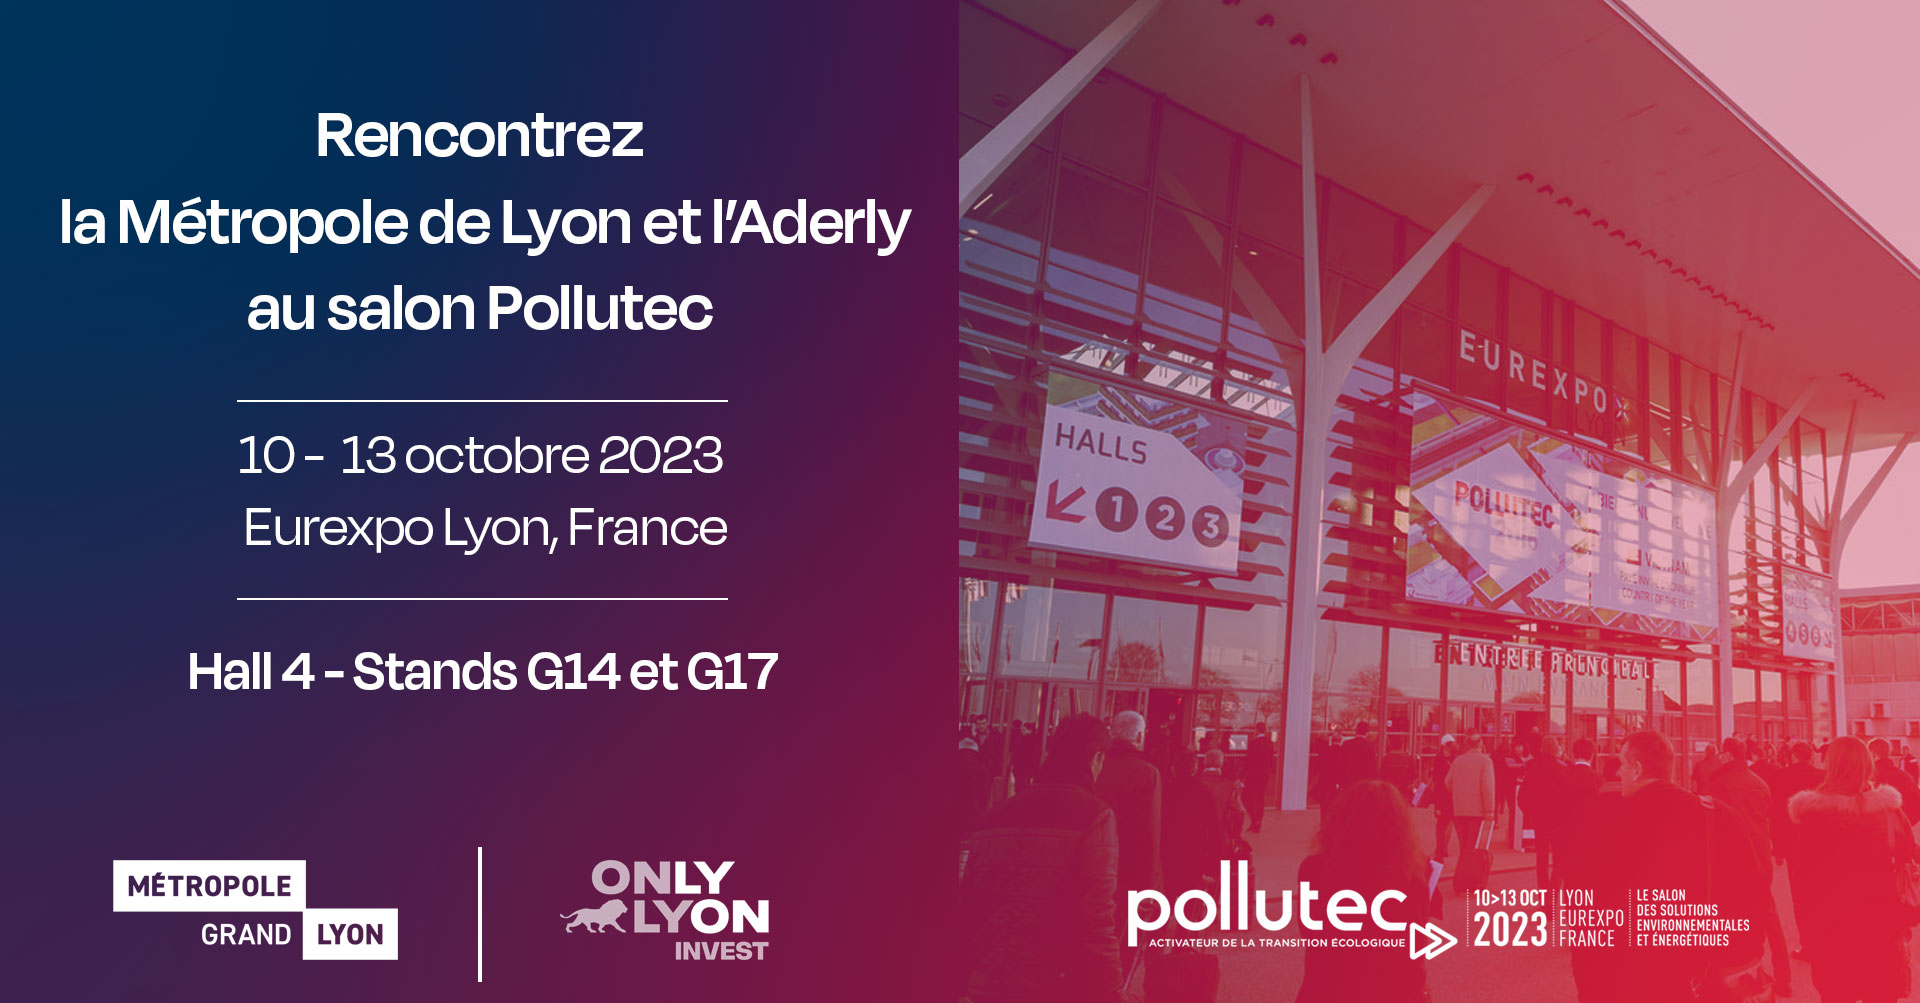 Rencontrez la Métropole de Lyon et l’Aderly au salon Pollutec 2023, à Eurexpo Lyon (Chassieu). Rendez-vous Hall 4 stands G14 et G17 au salon des solutions environnementales et énergétiques, du 10 au 13 octobre 2023 !